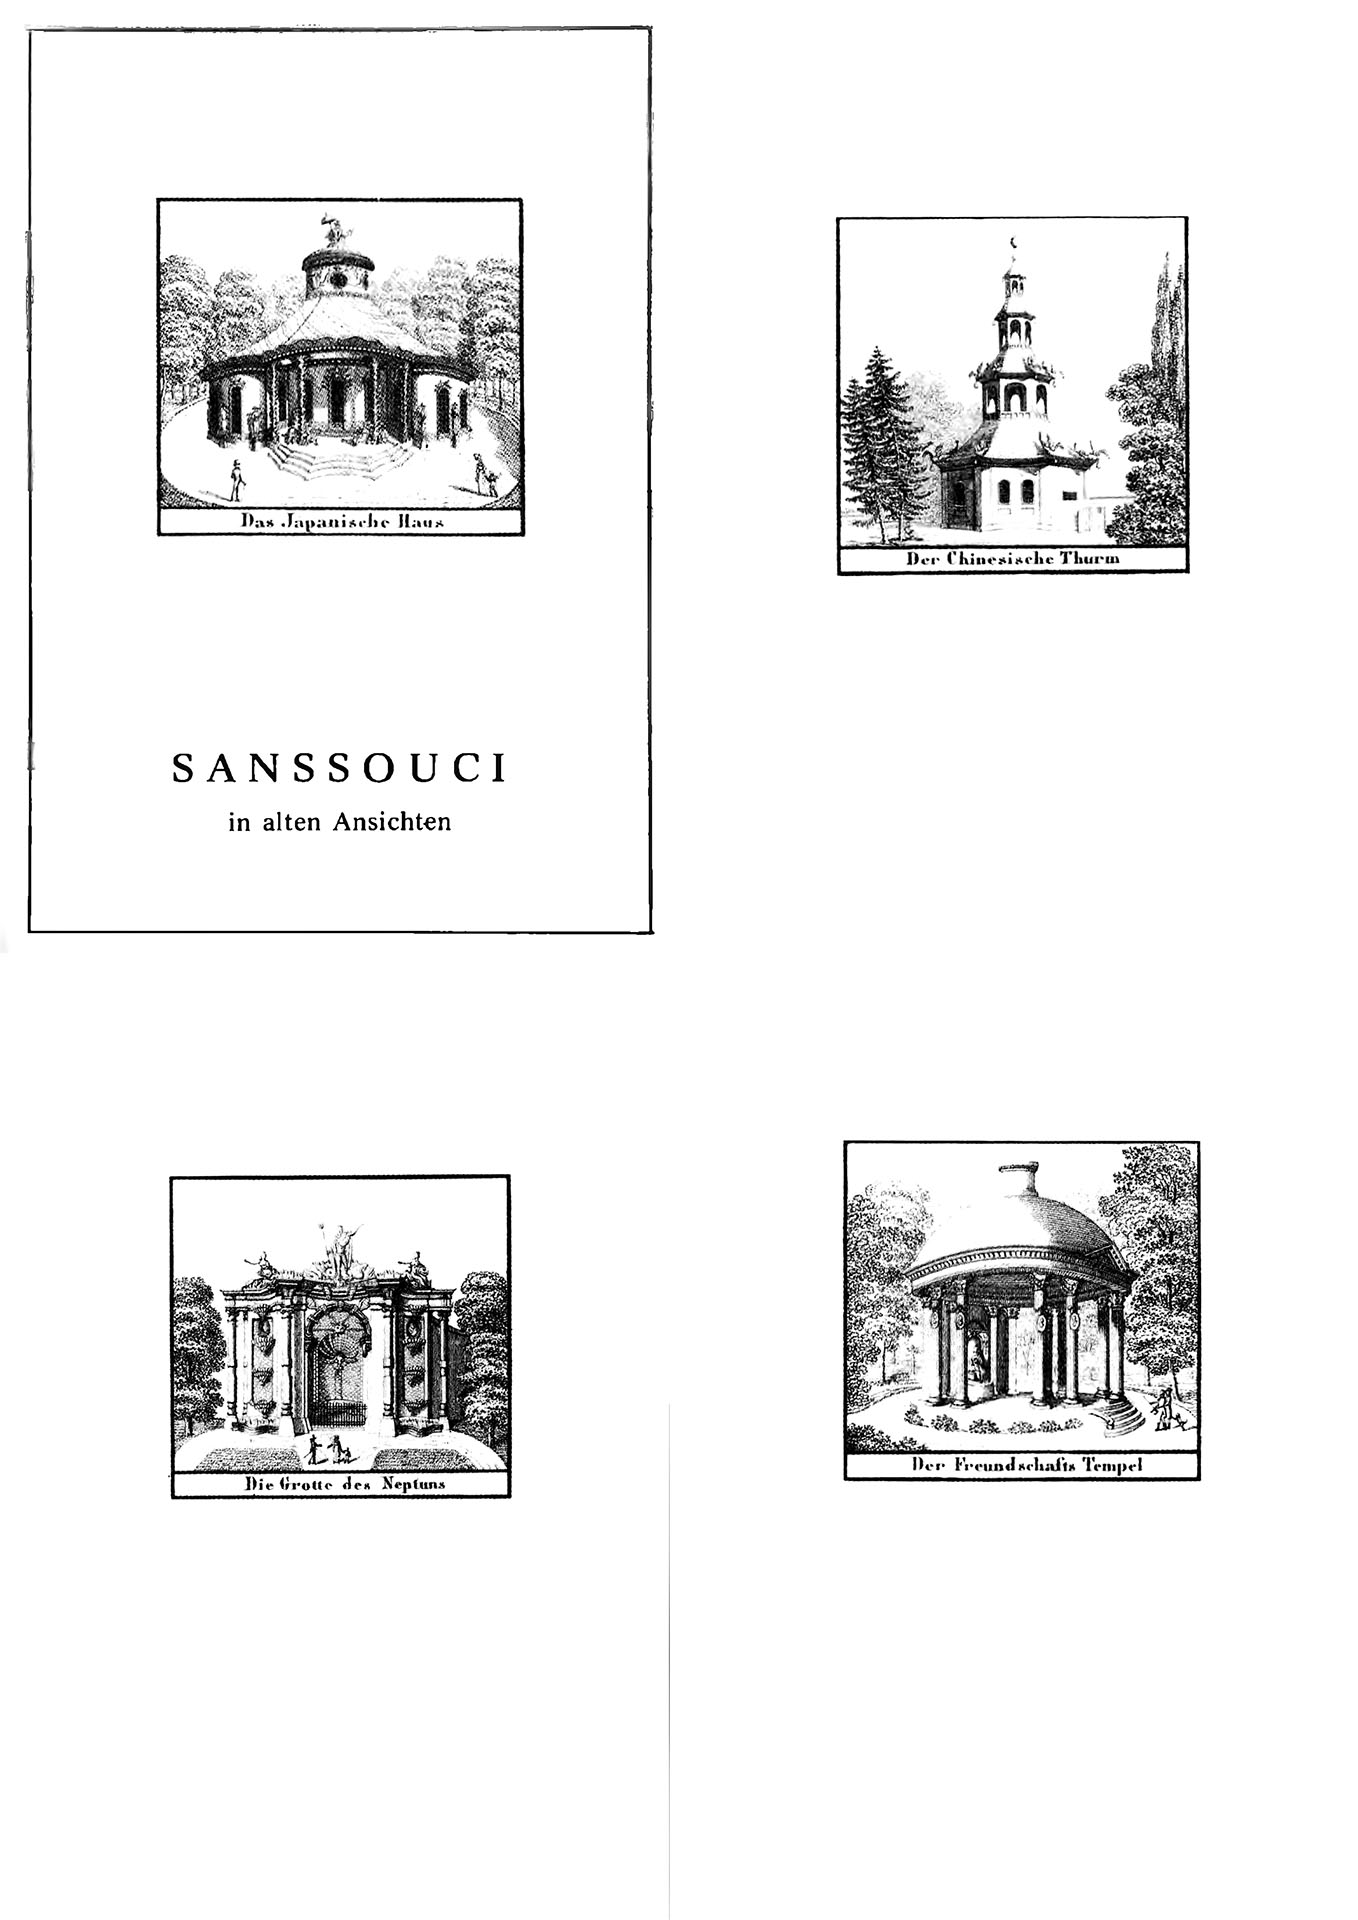 Sanssouci in alten Ansichten - Generaldirektion der Staatlichen Schlösser und Gärten Potsdam - Sanssouci